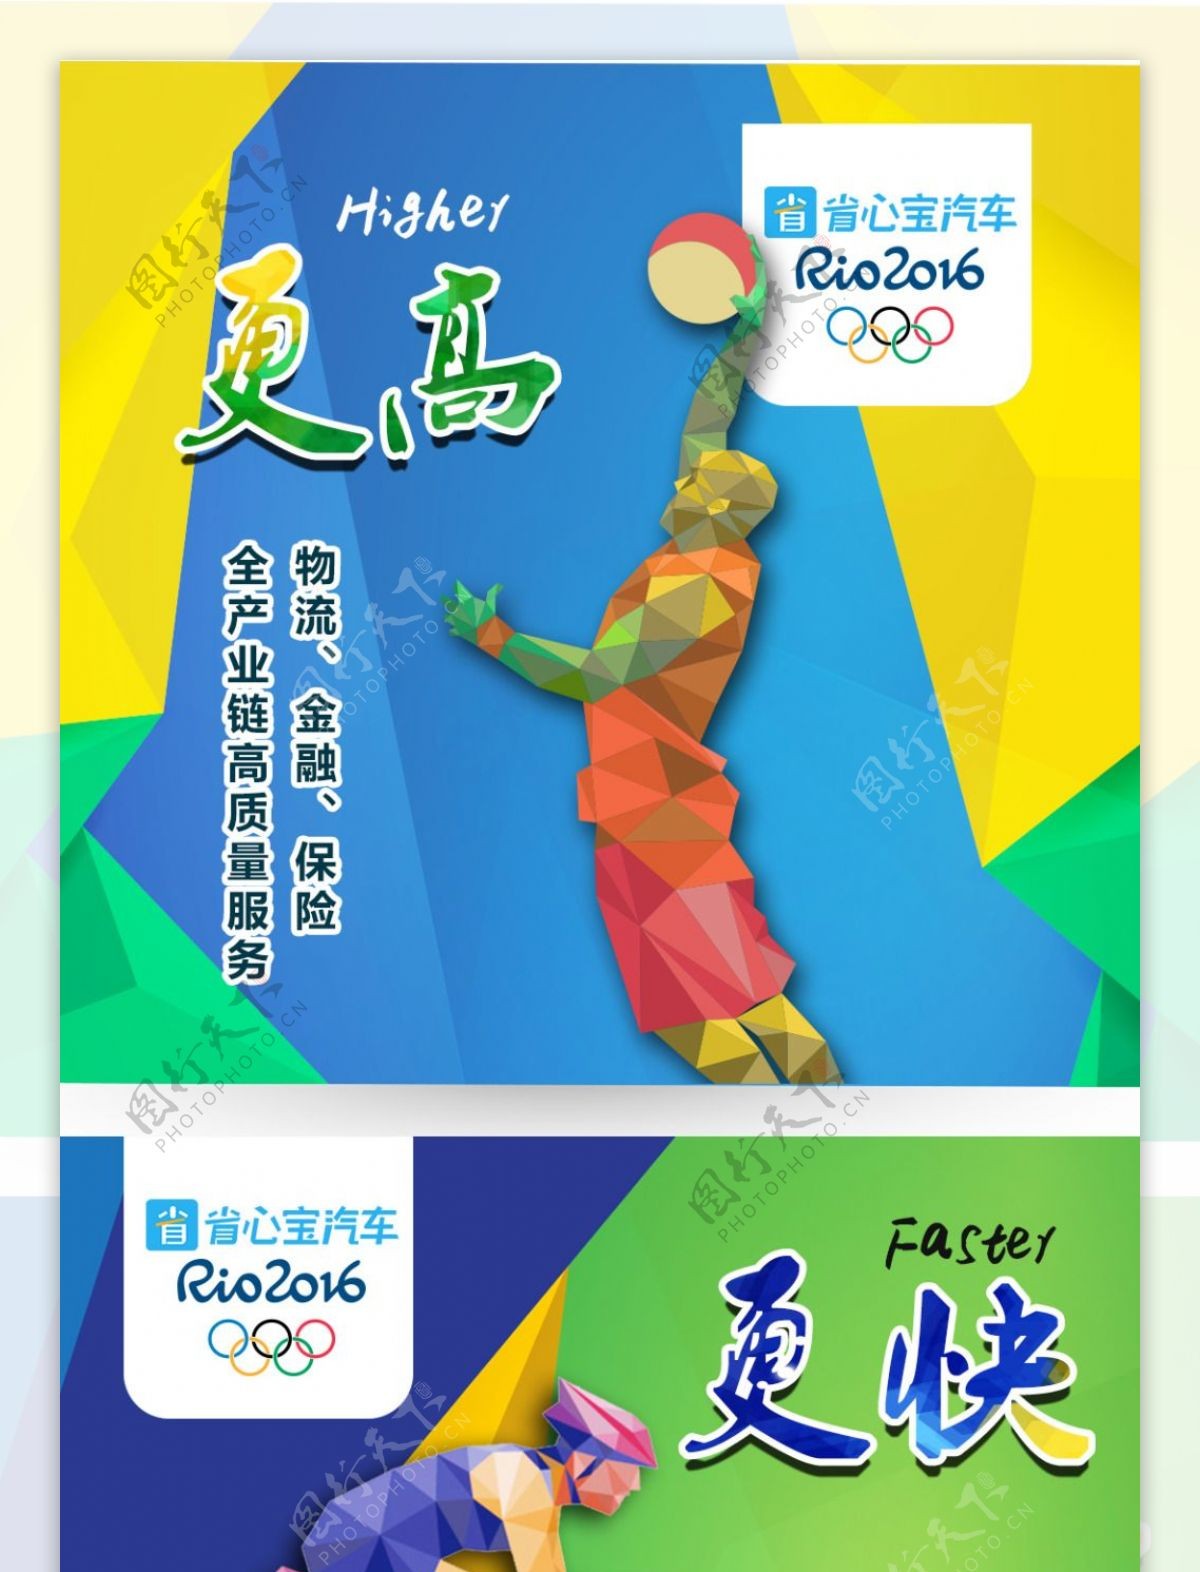 奥运主题更高更强更快宣传海报平面设计